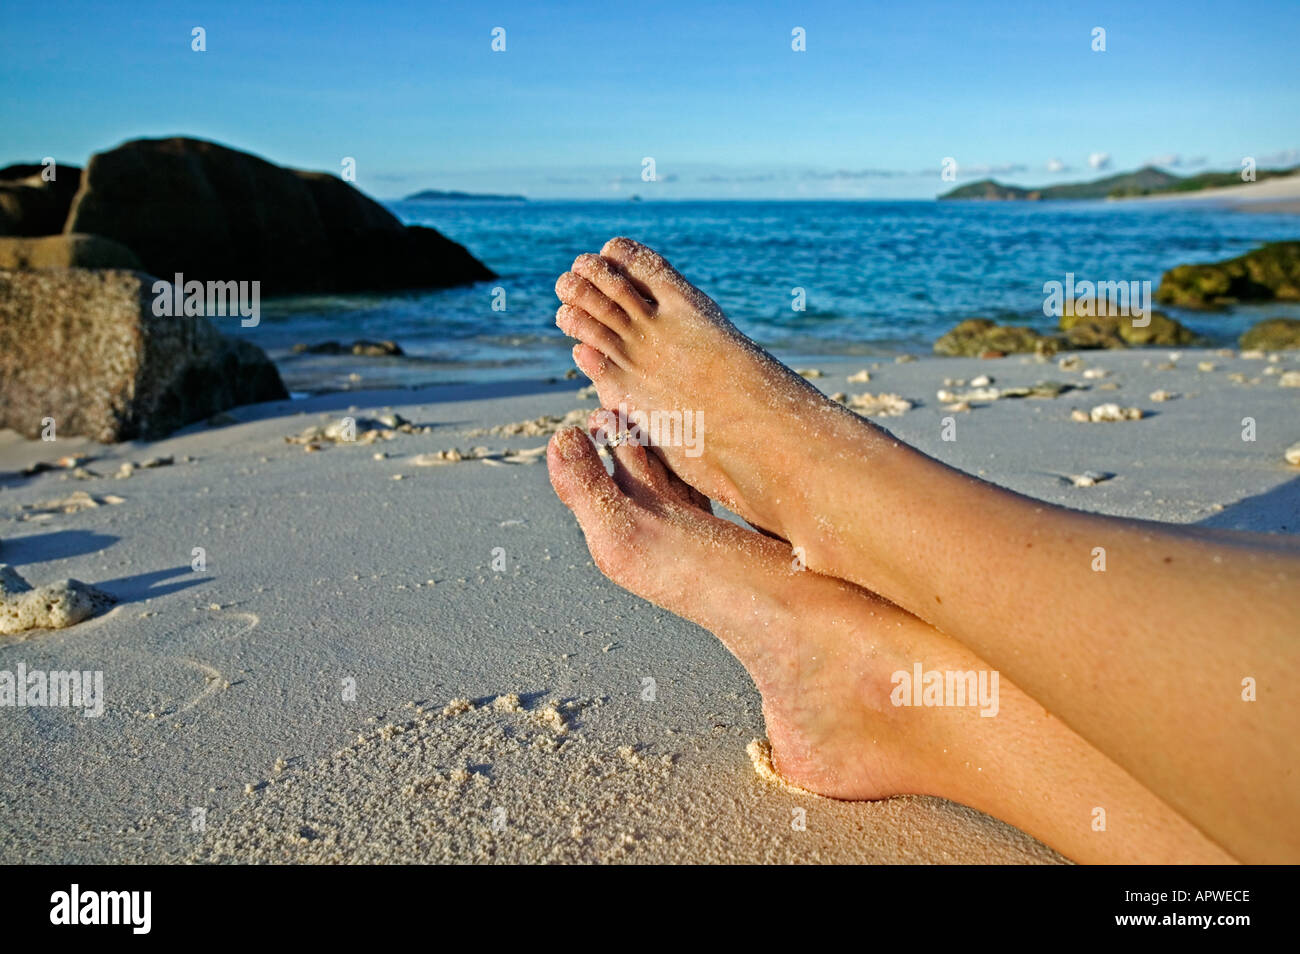 Beine der Frau Entspannung am Strand Modell freigegeben Seychellen Cousine Island Stockfoto